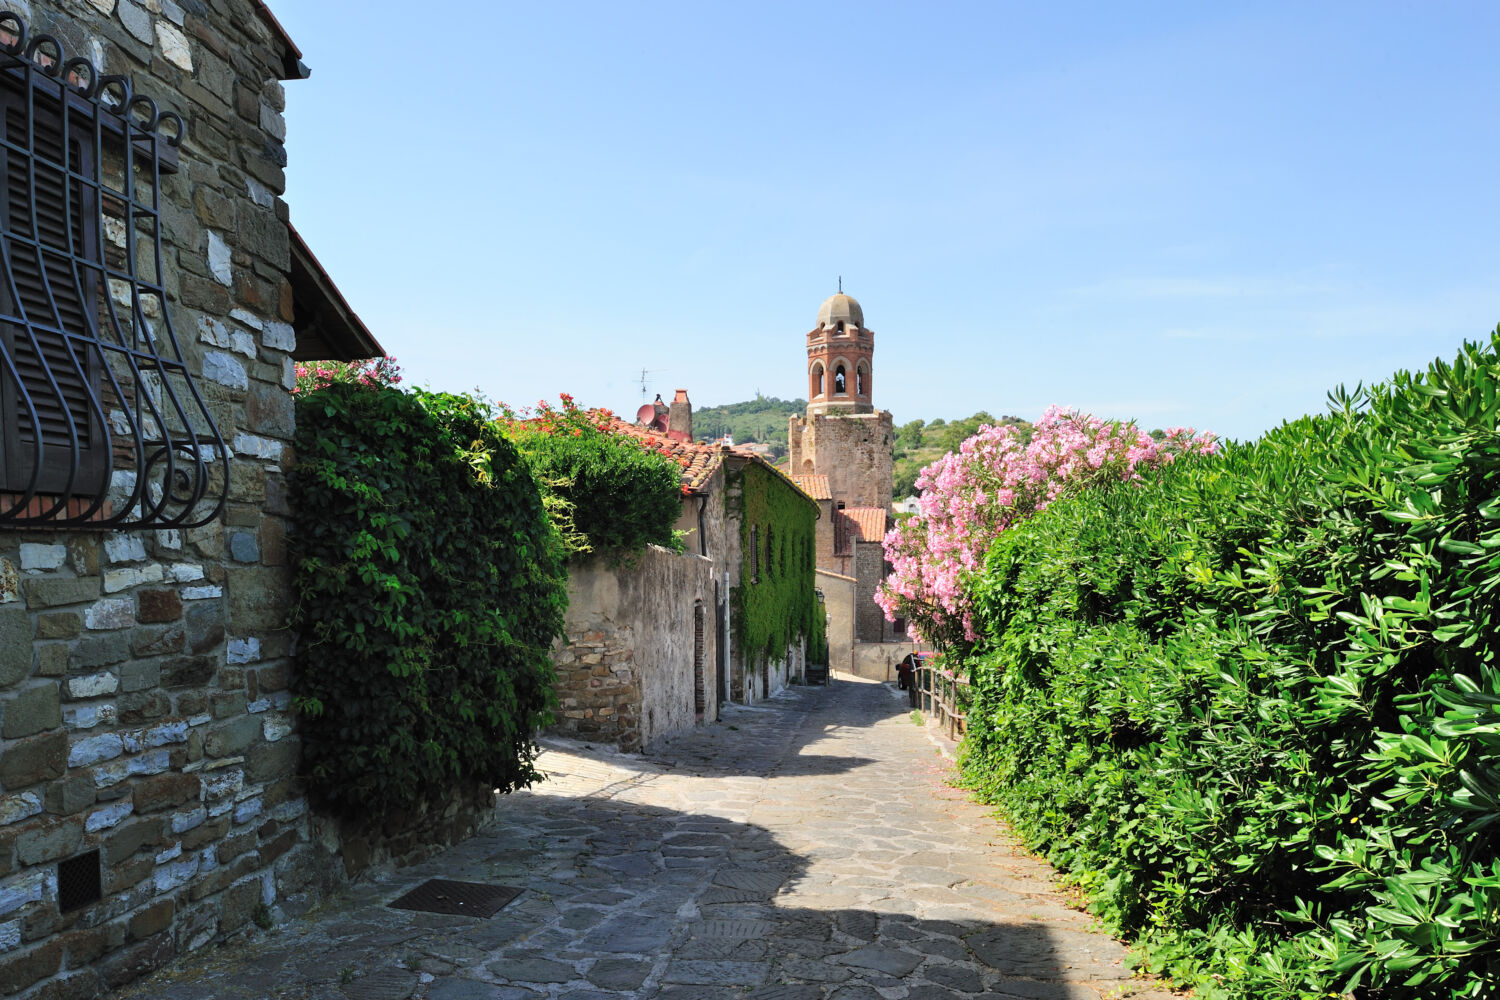 Billede af Maremma. Italiensk by med flot stentorv og grønne planter.